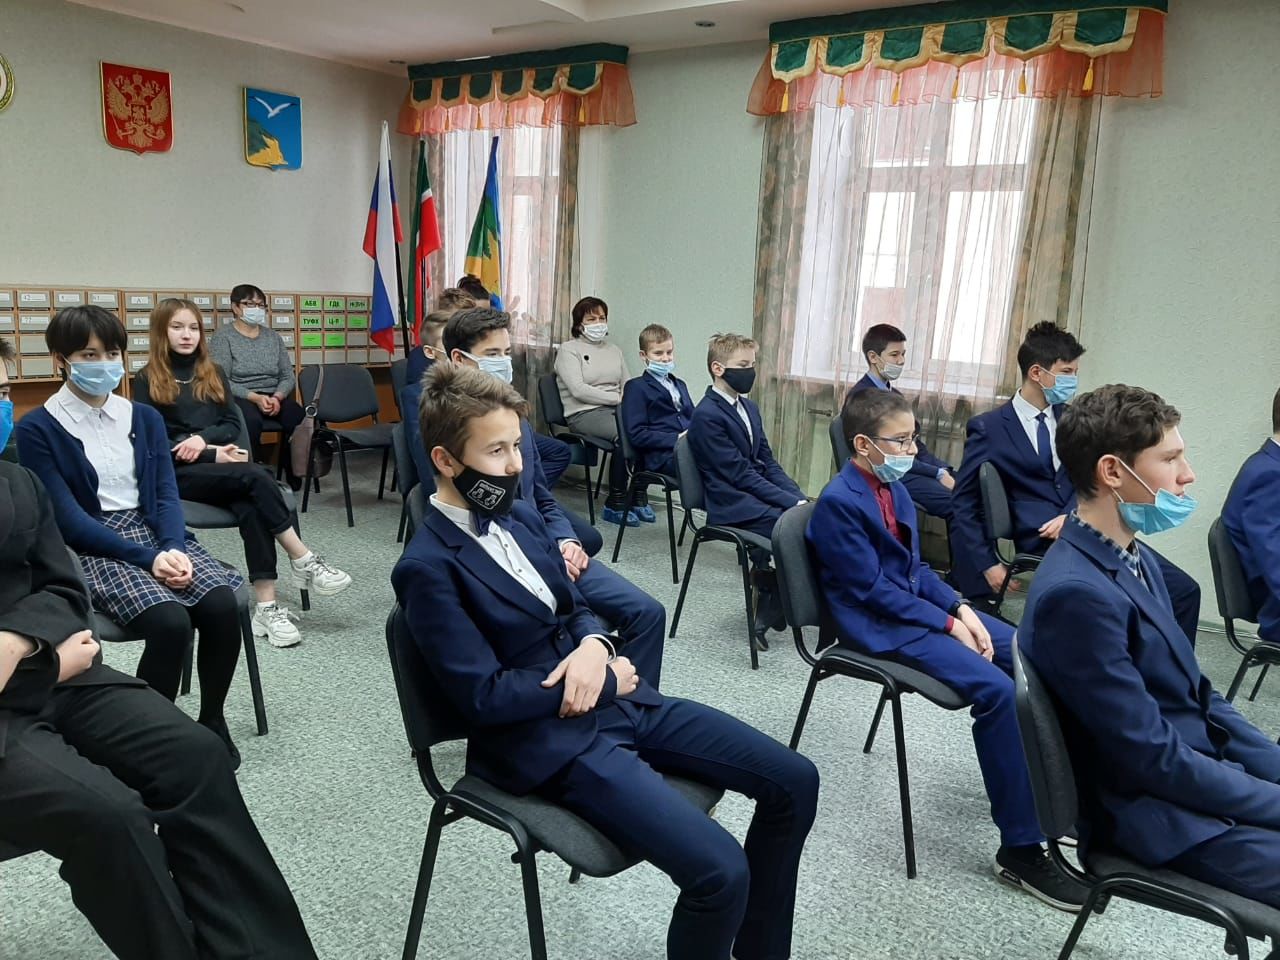 Мероприятие, посвященное 100-летию ТАССР и истории района, прошло в Центральной библиотеке